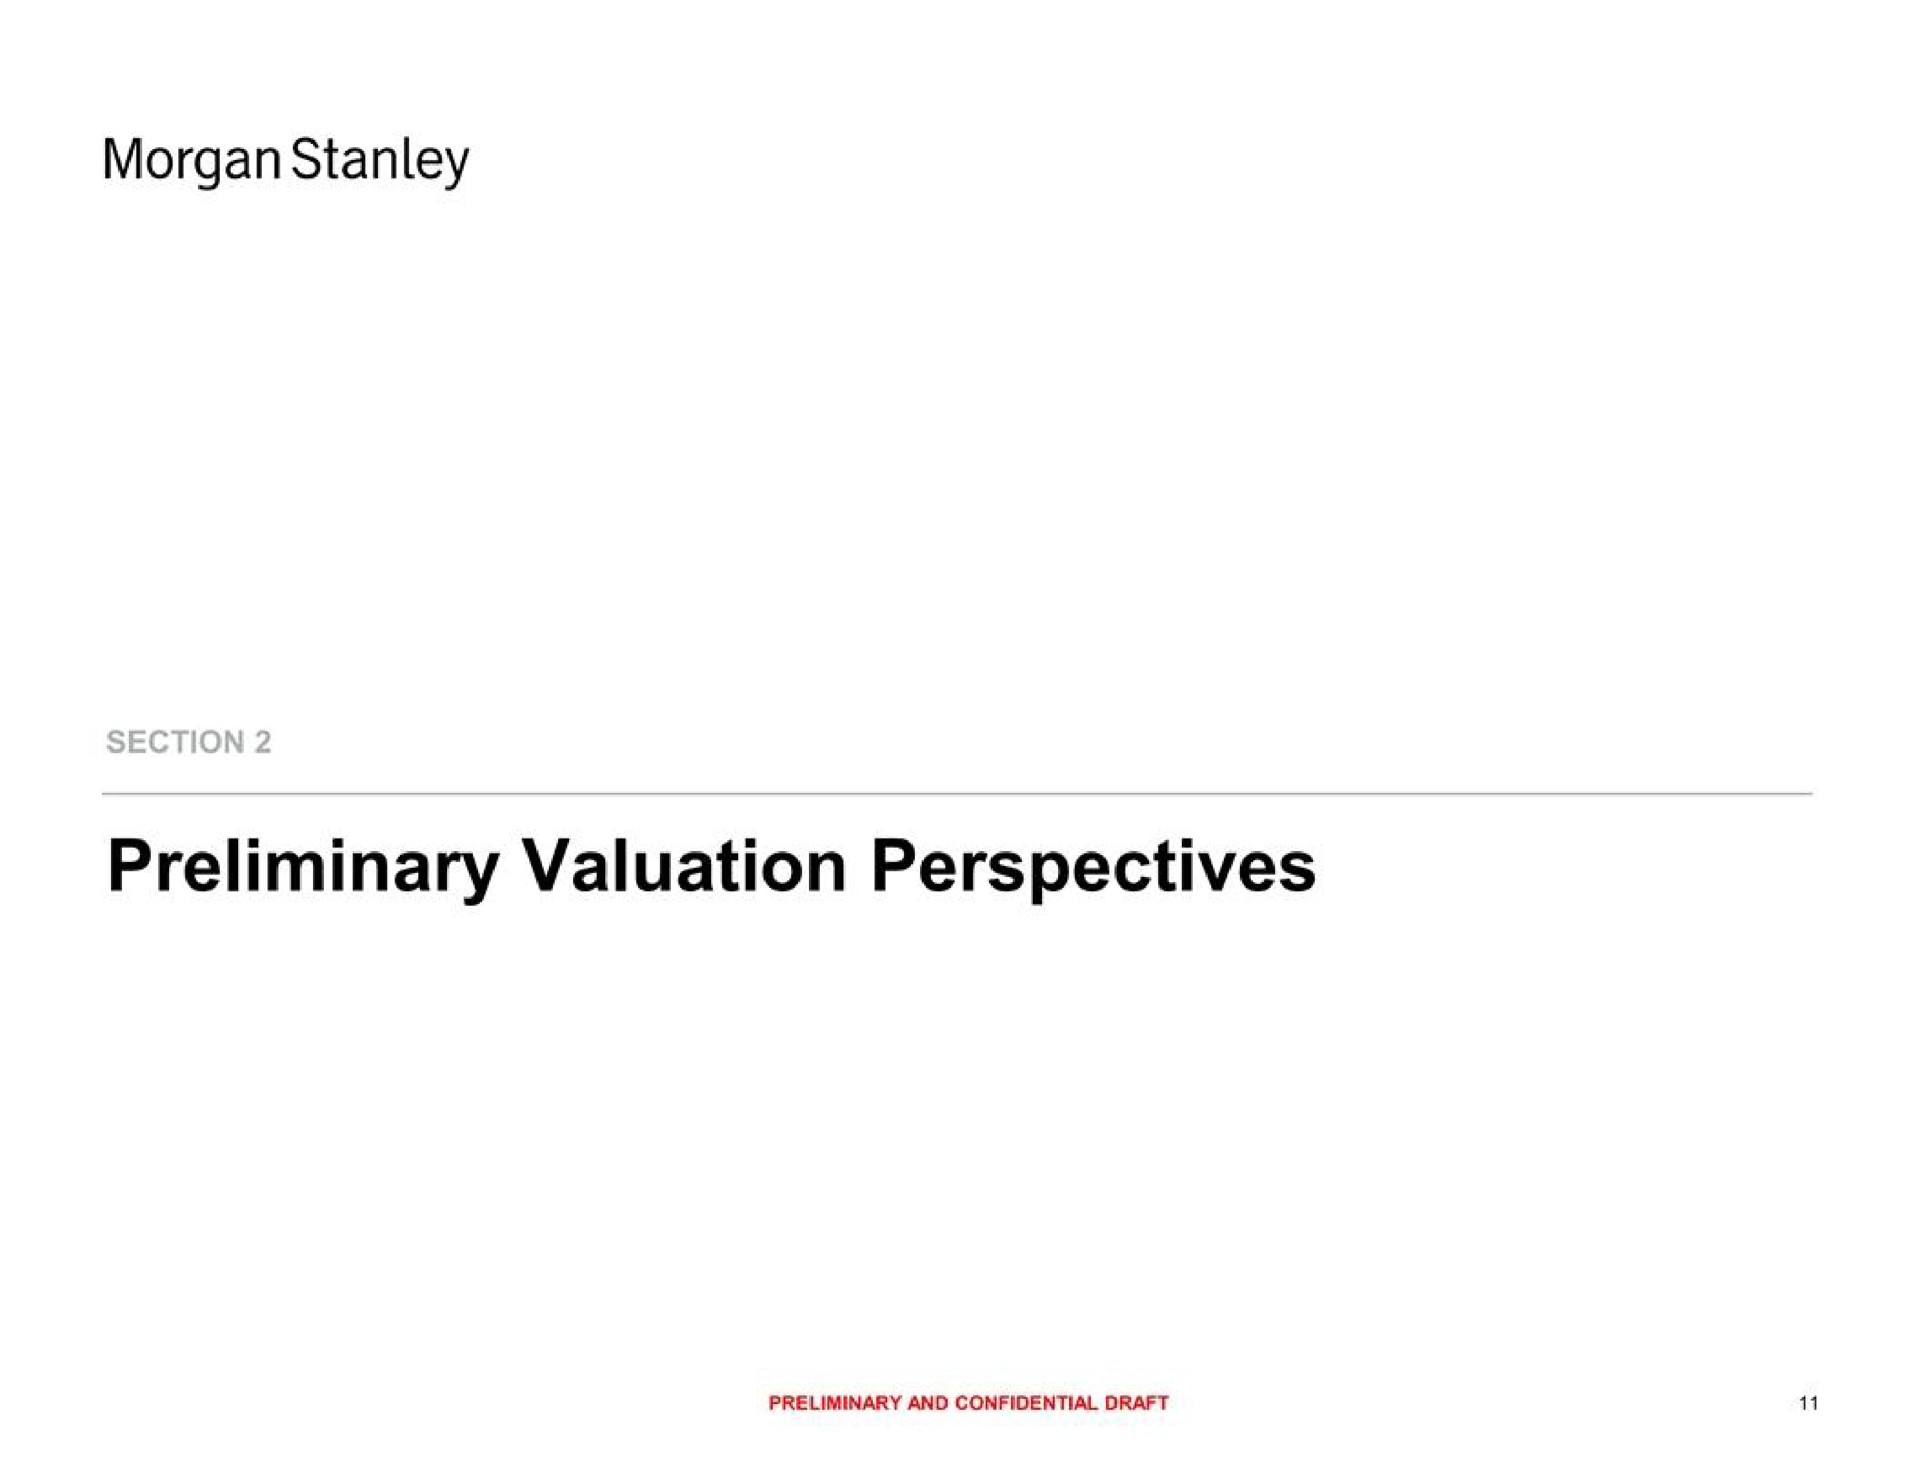 morgan preliminary valuation perspectives | Morgan Stanley